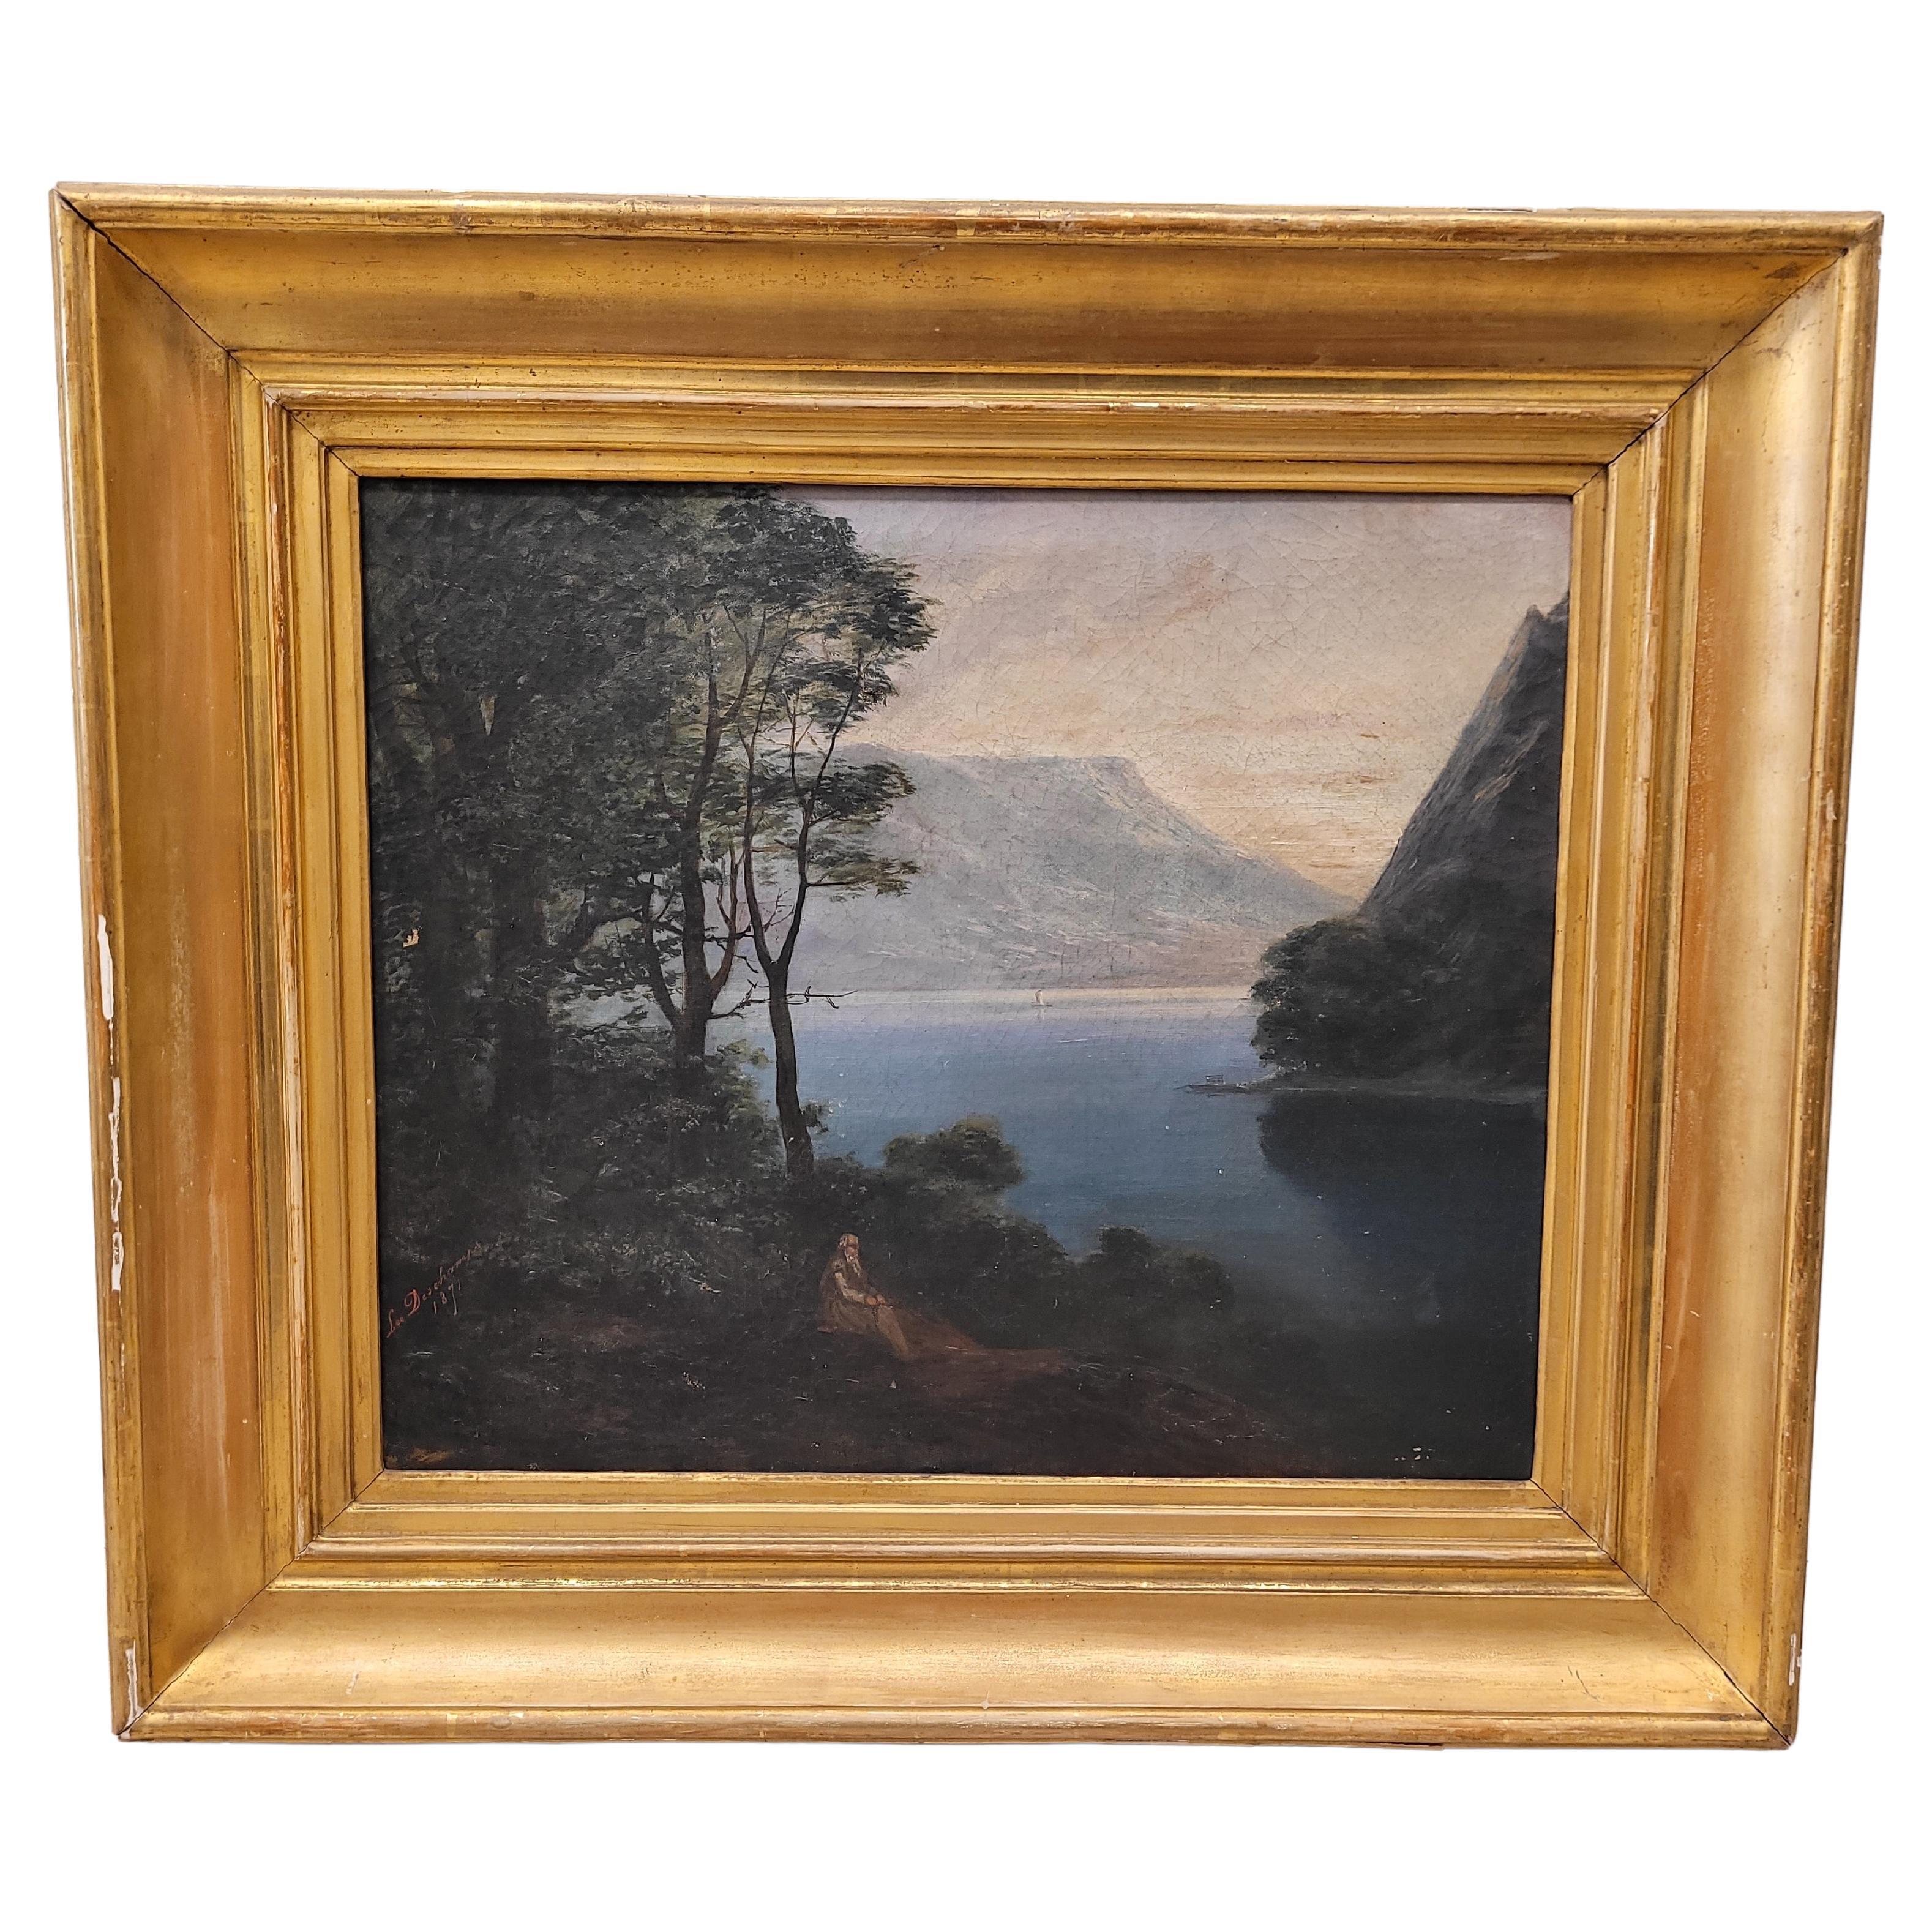 Ó/L France "Romantic landscape" Leo Deschamps, 1871 - Signed